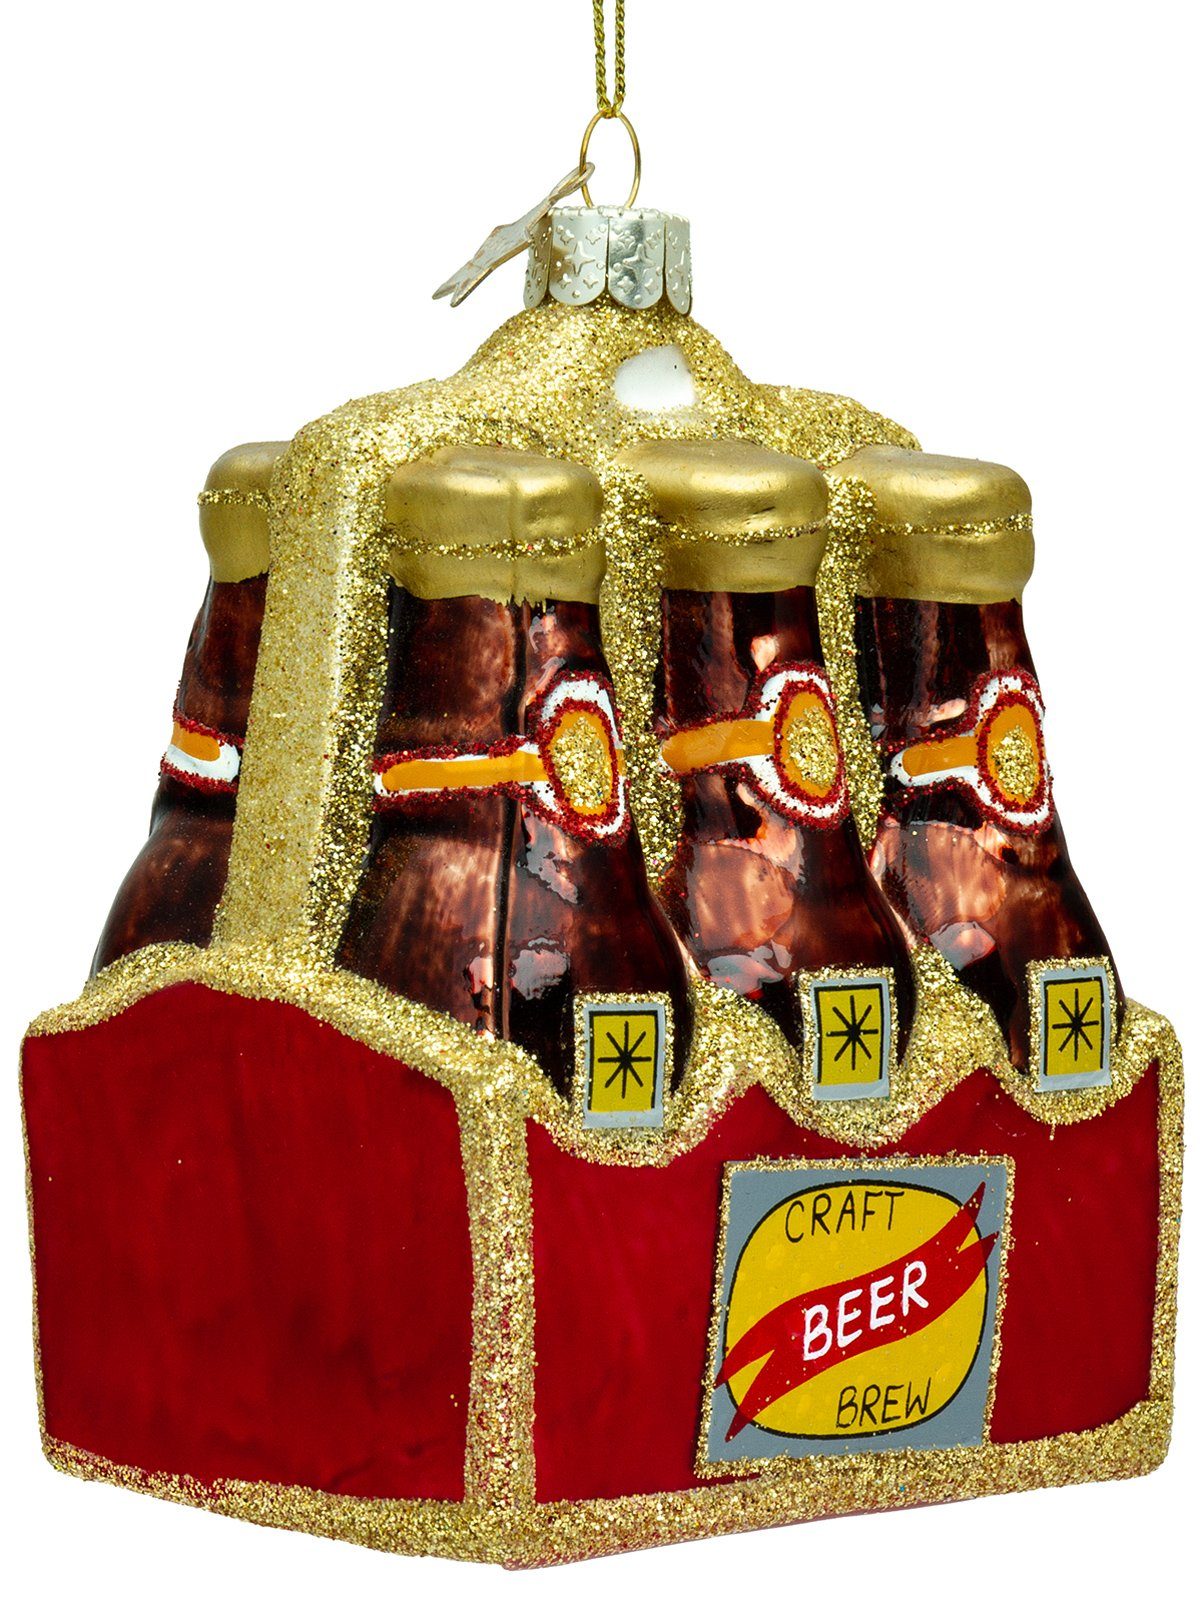 SIKORA Christbaumschmuck SIKORA BS483 Six-Pack Craft Bier Christbaumschmuck Glas Figur Weihnachtsbaum Anhänger